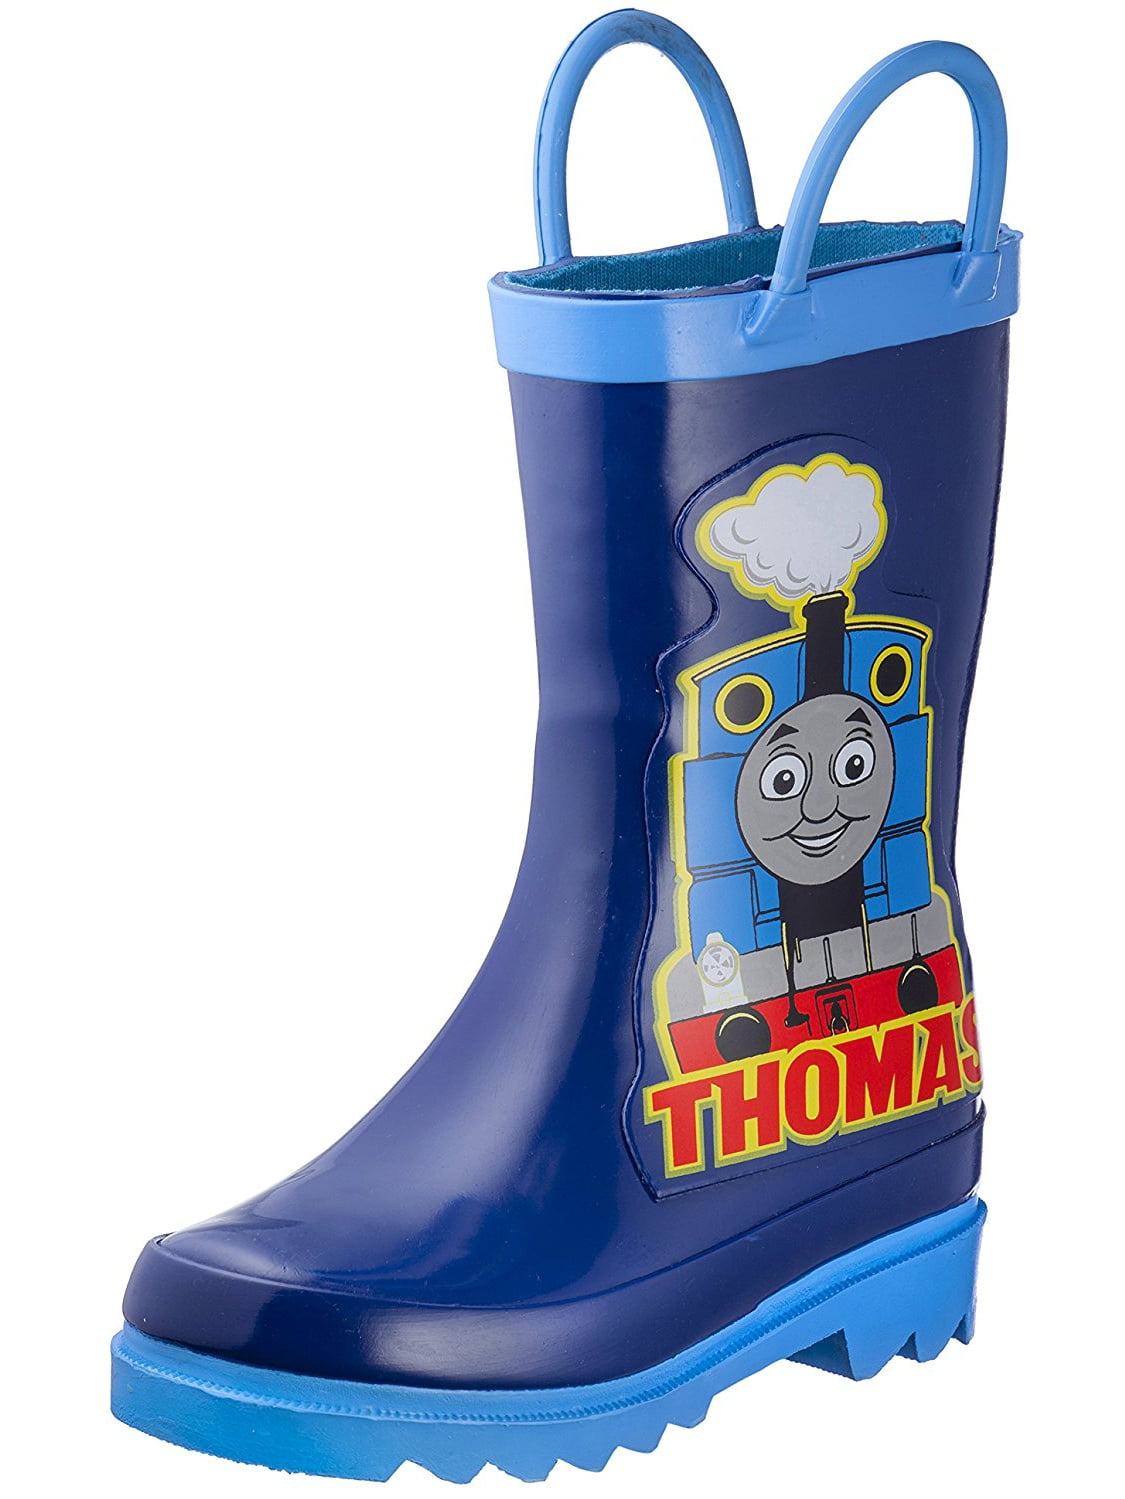 thomas the train shoes at walmart